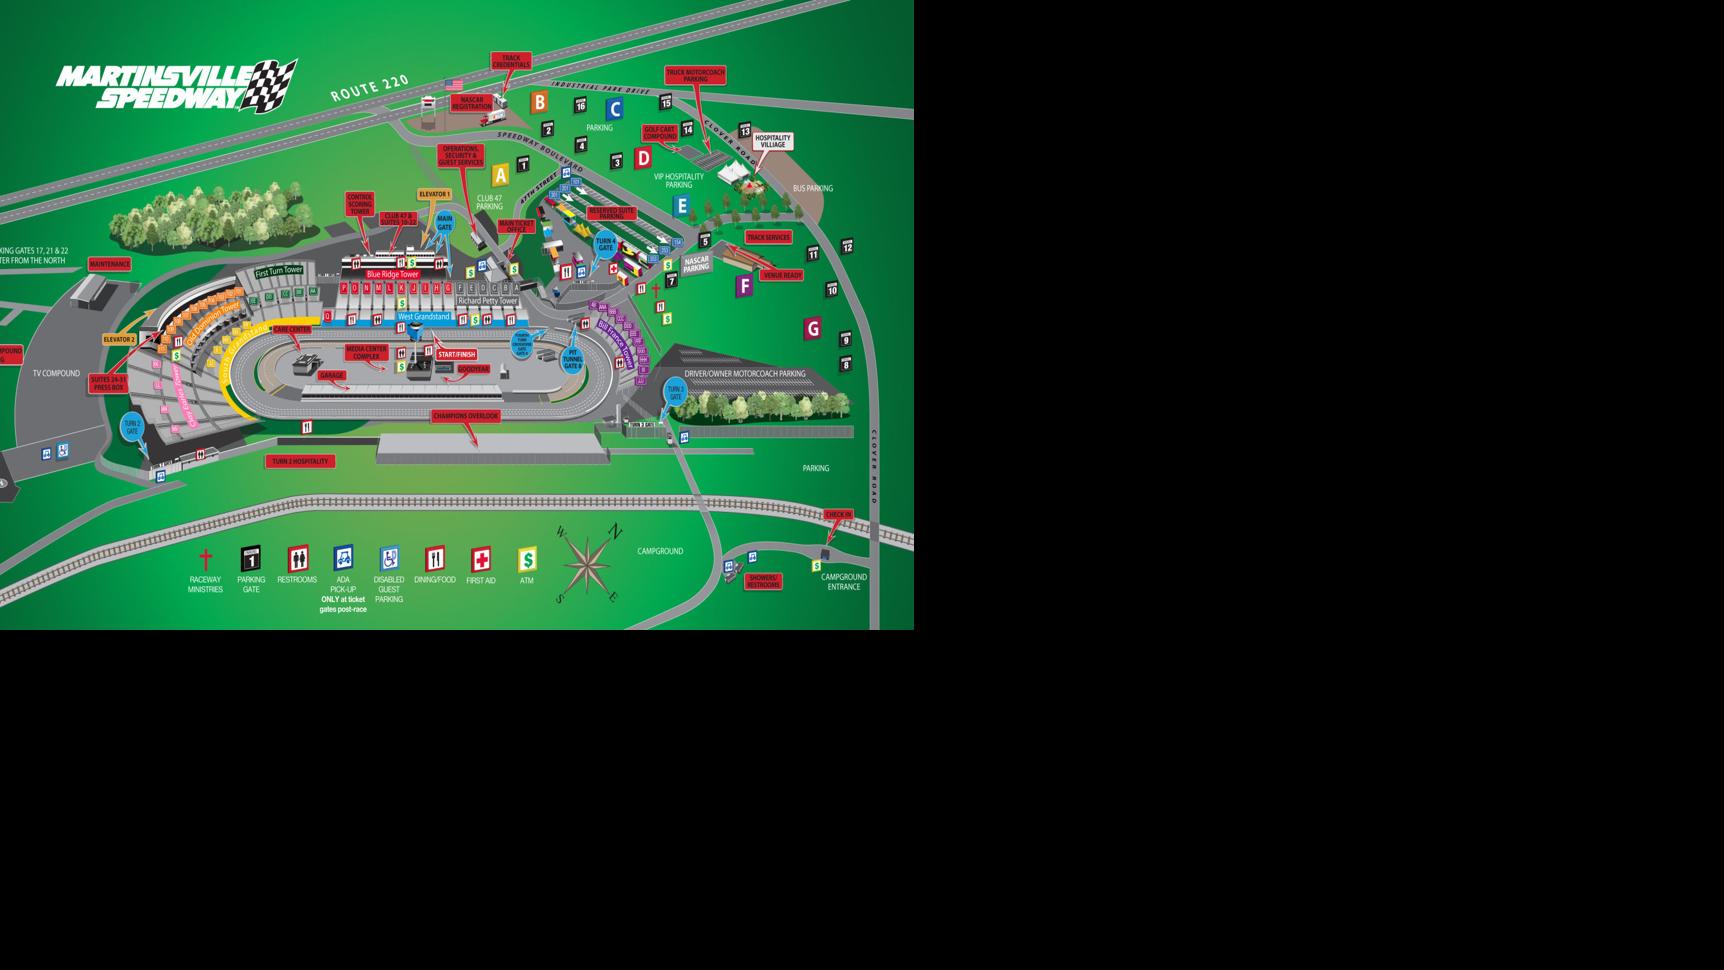 Martinsville Speedway Schedules and maps Martinsville Speedway